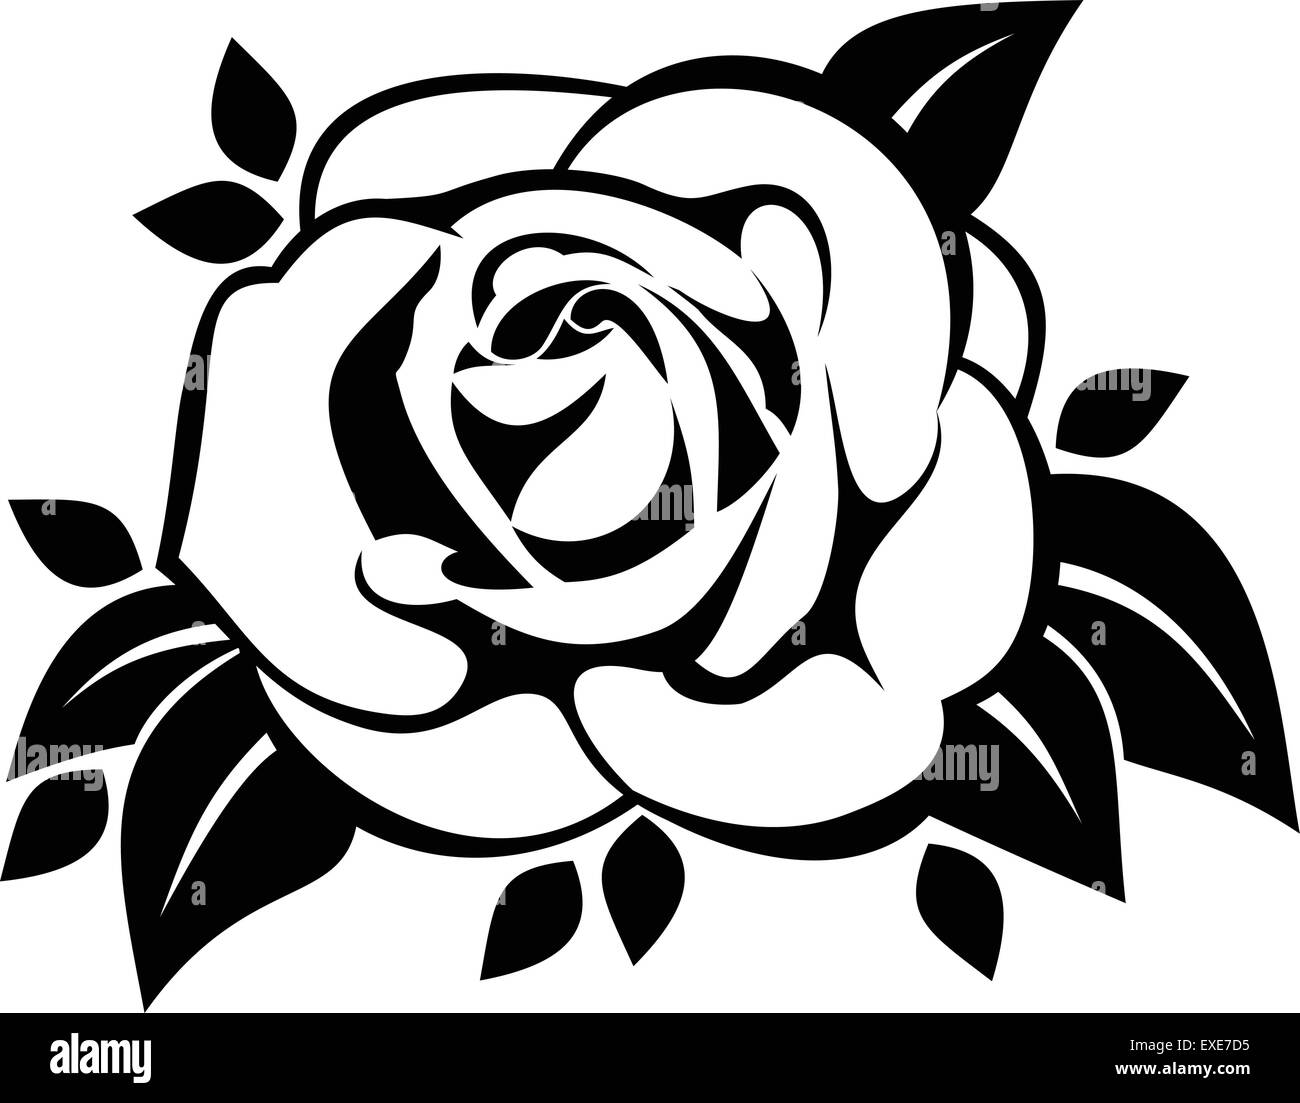 Flor negra Imágenes de stock en blanco y negro - Alamy